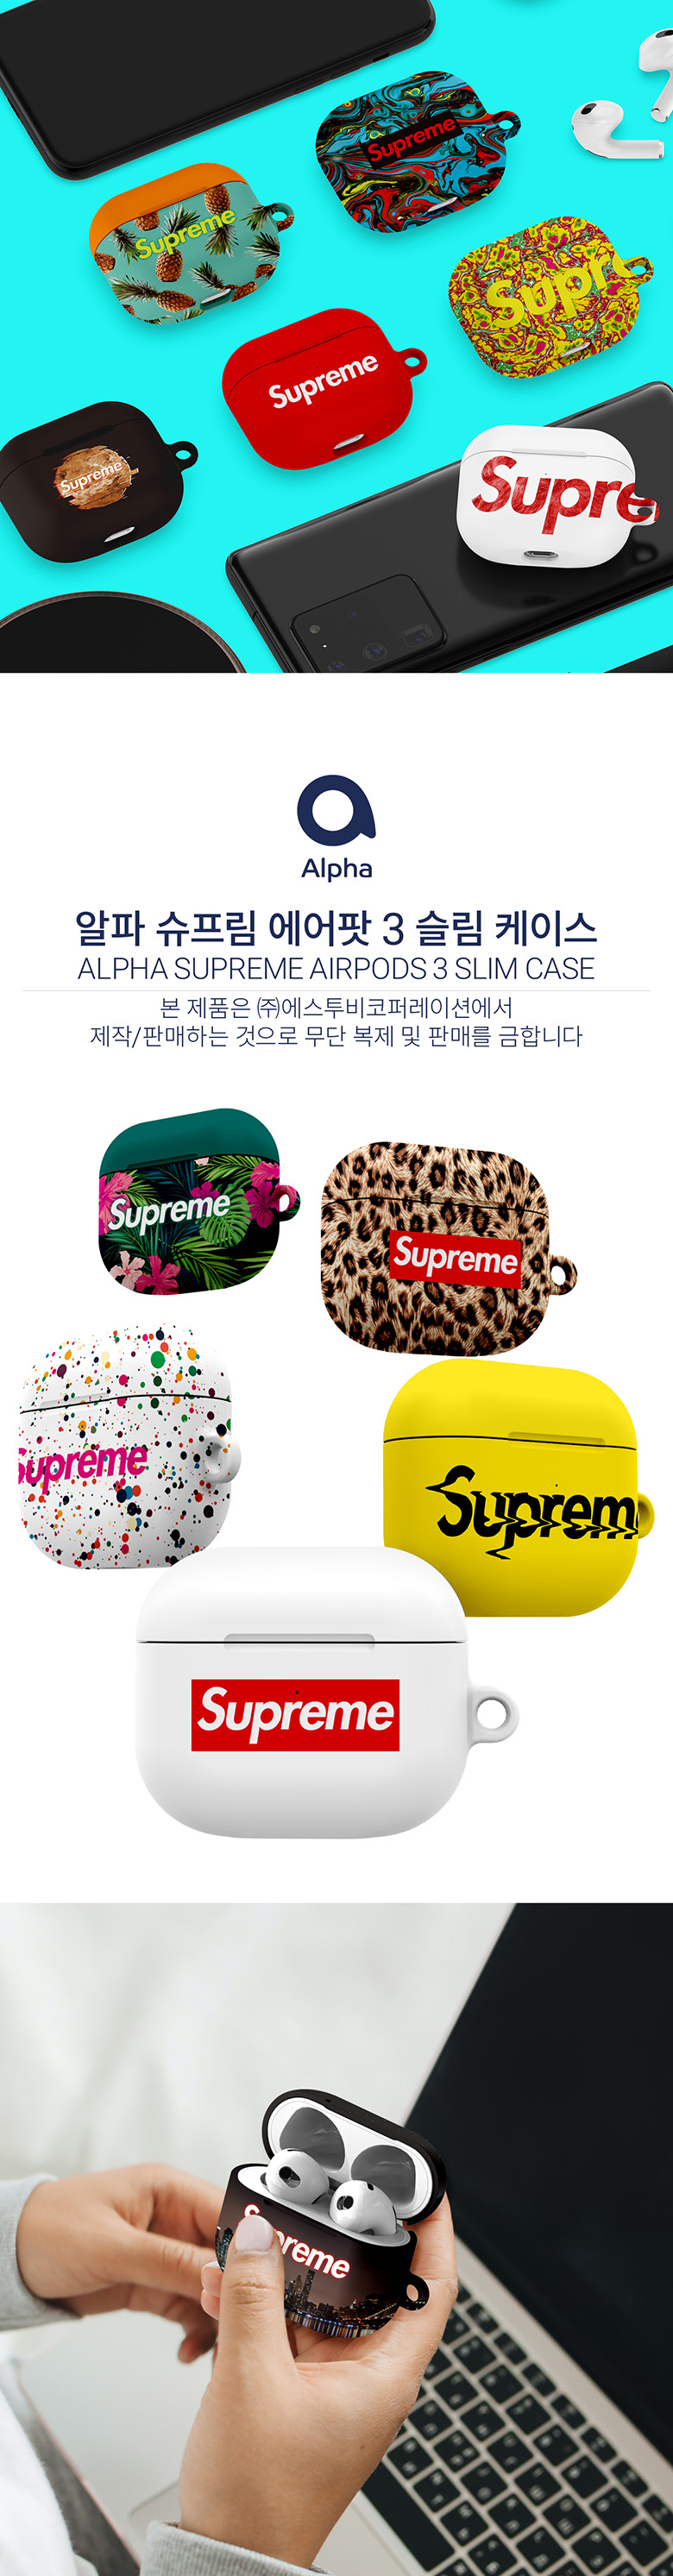 Supreme airpod pro case 